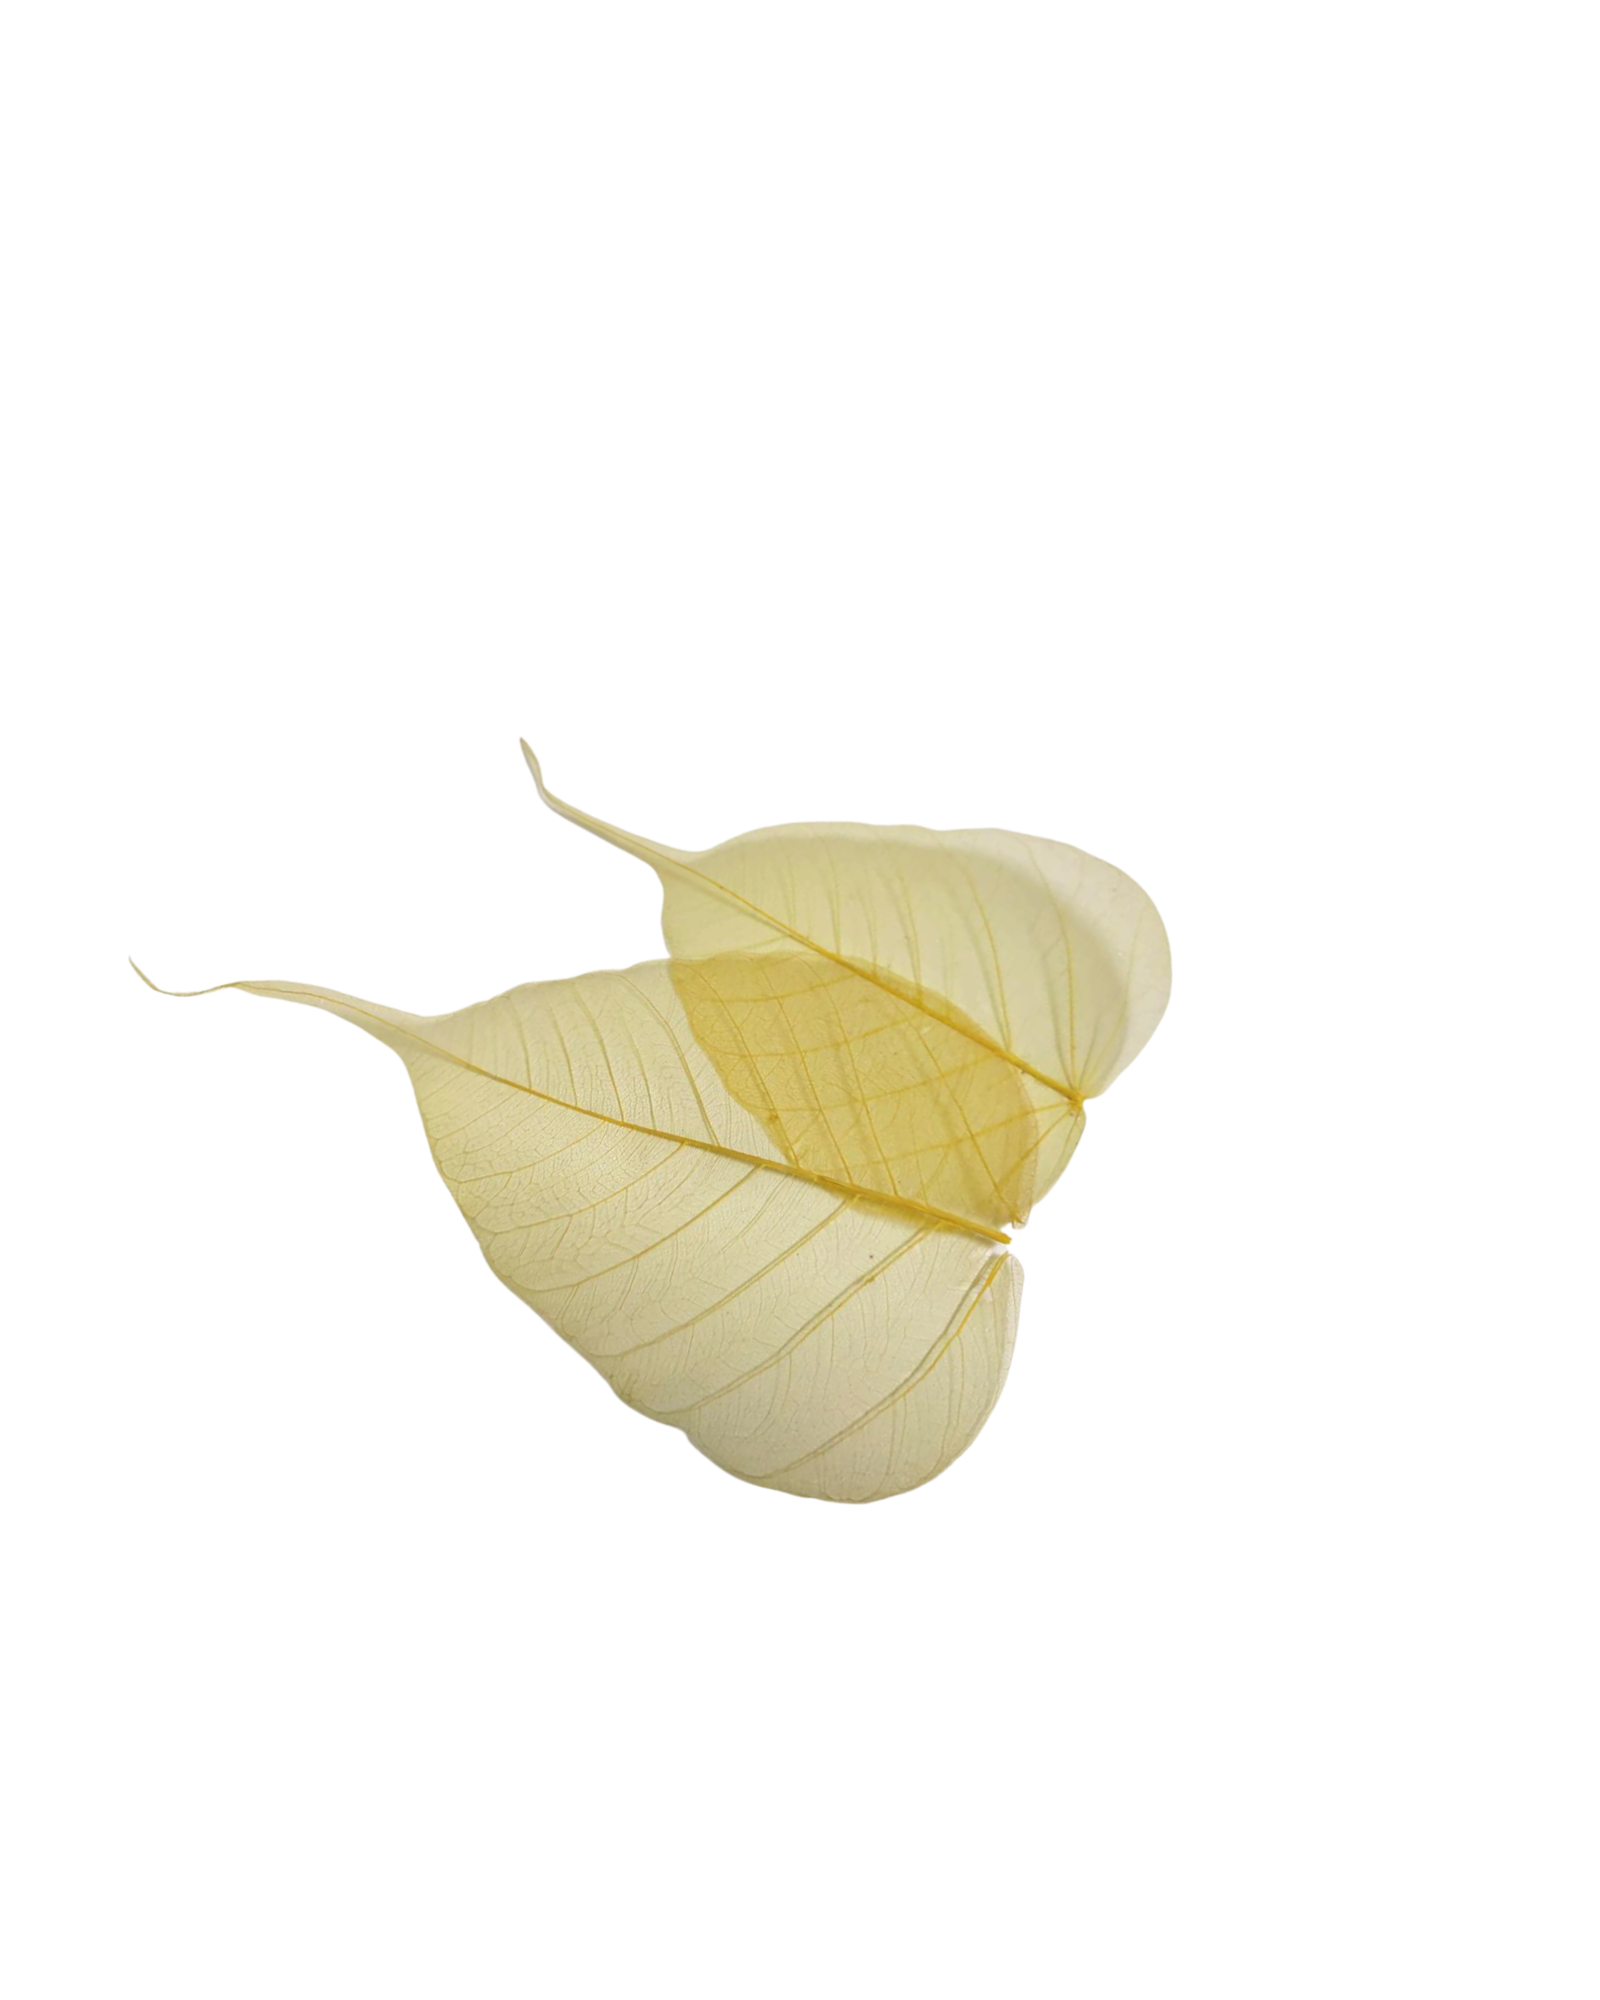 Natural Peepal Leaf Skeleton yellow For Craft. Joynagar 